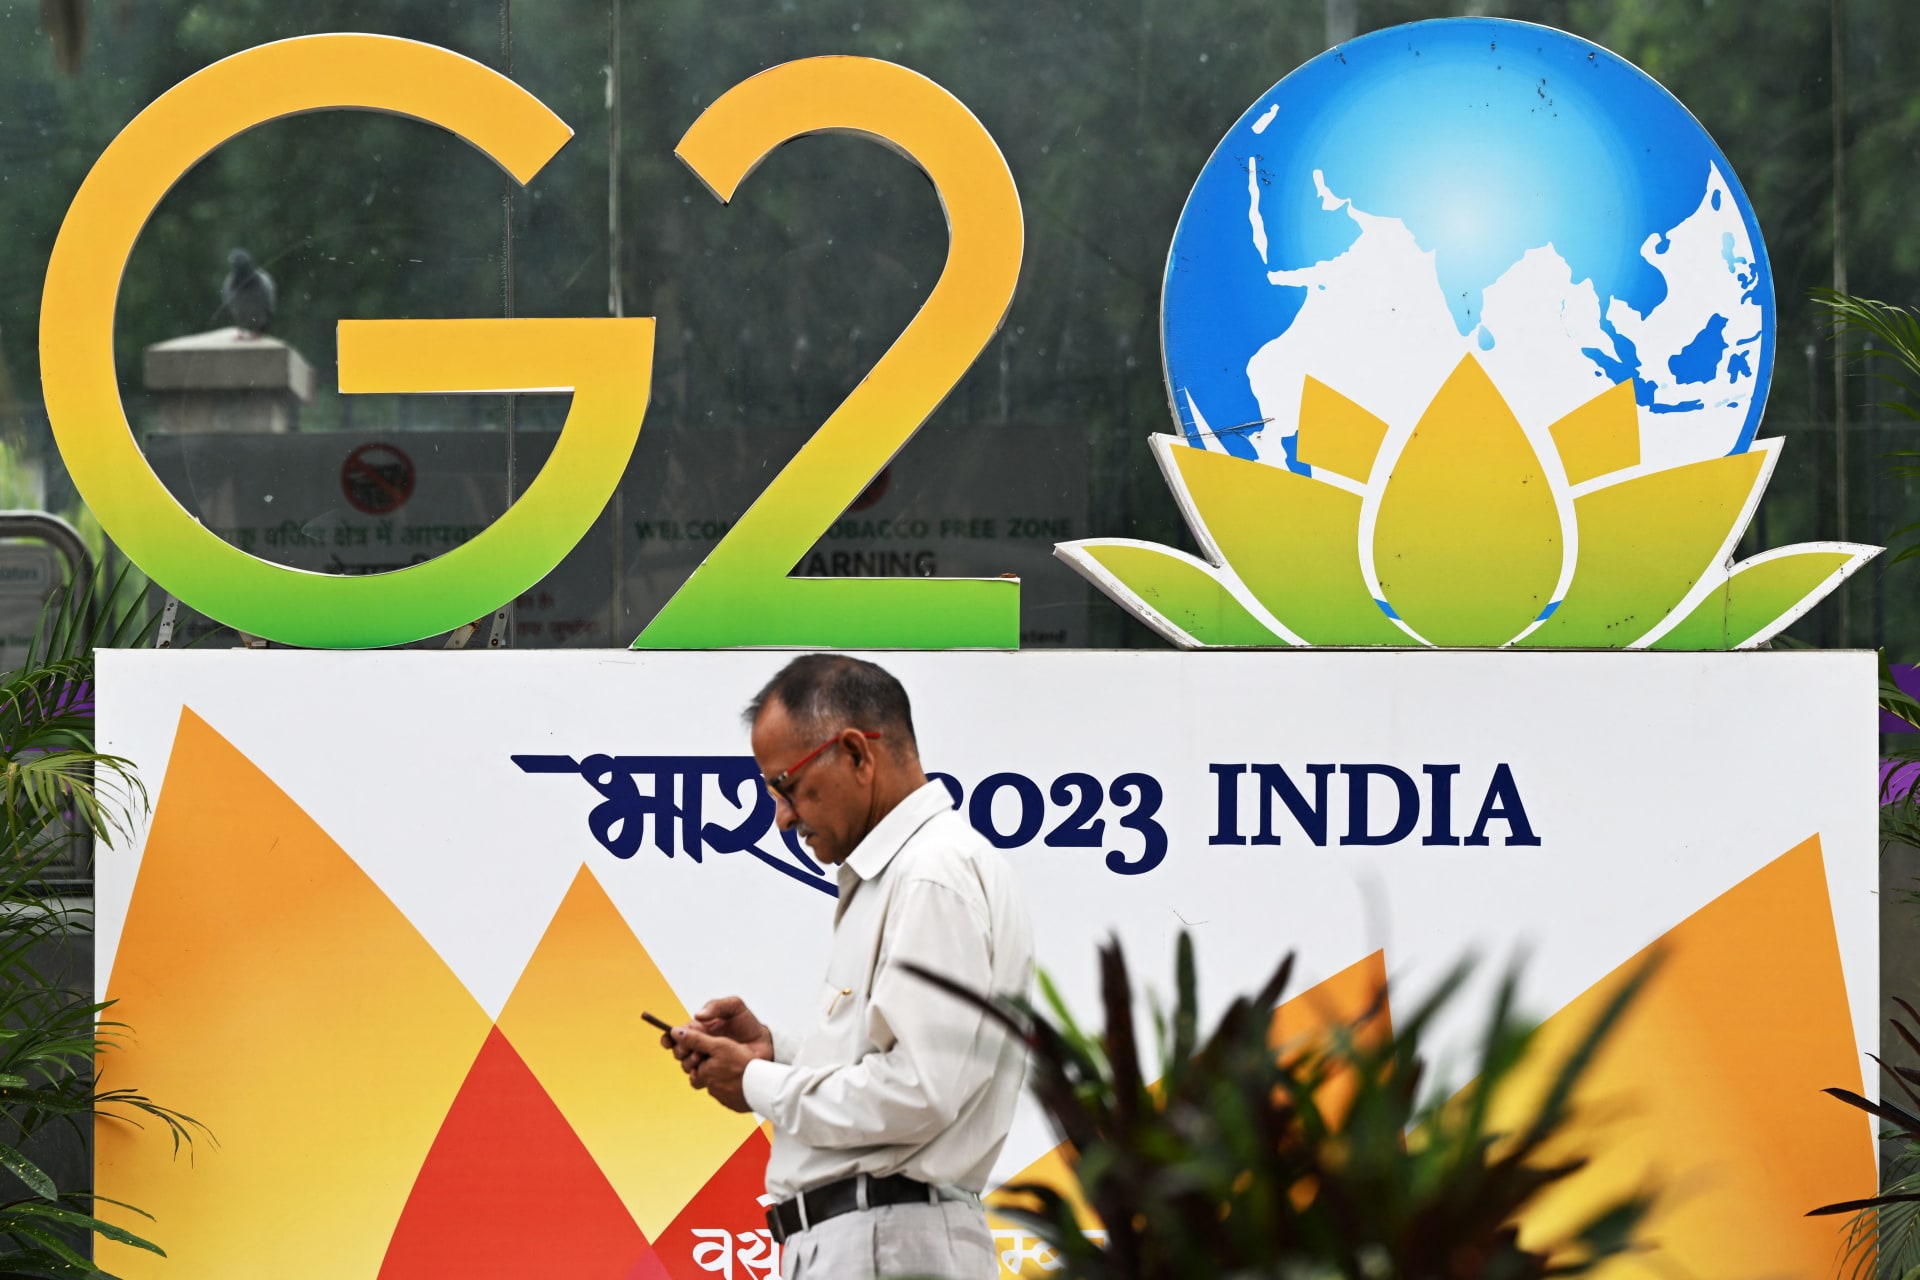 أمريكا: الهند أصيبت بـ"خيبة أمل" لغياب بوتين ورئيس الصين عن قمة العشرين